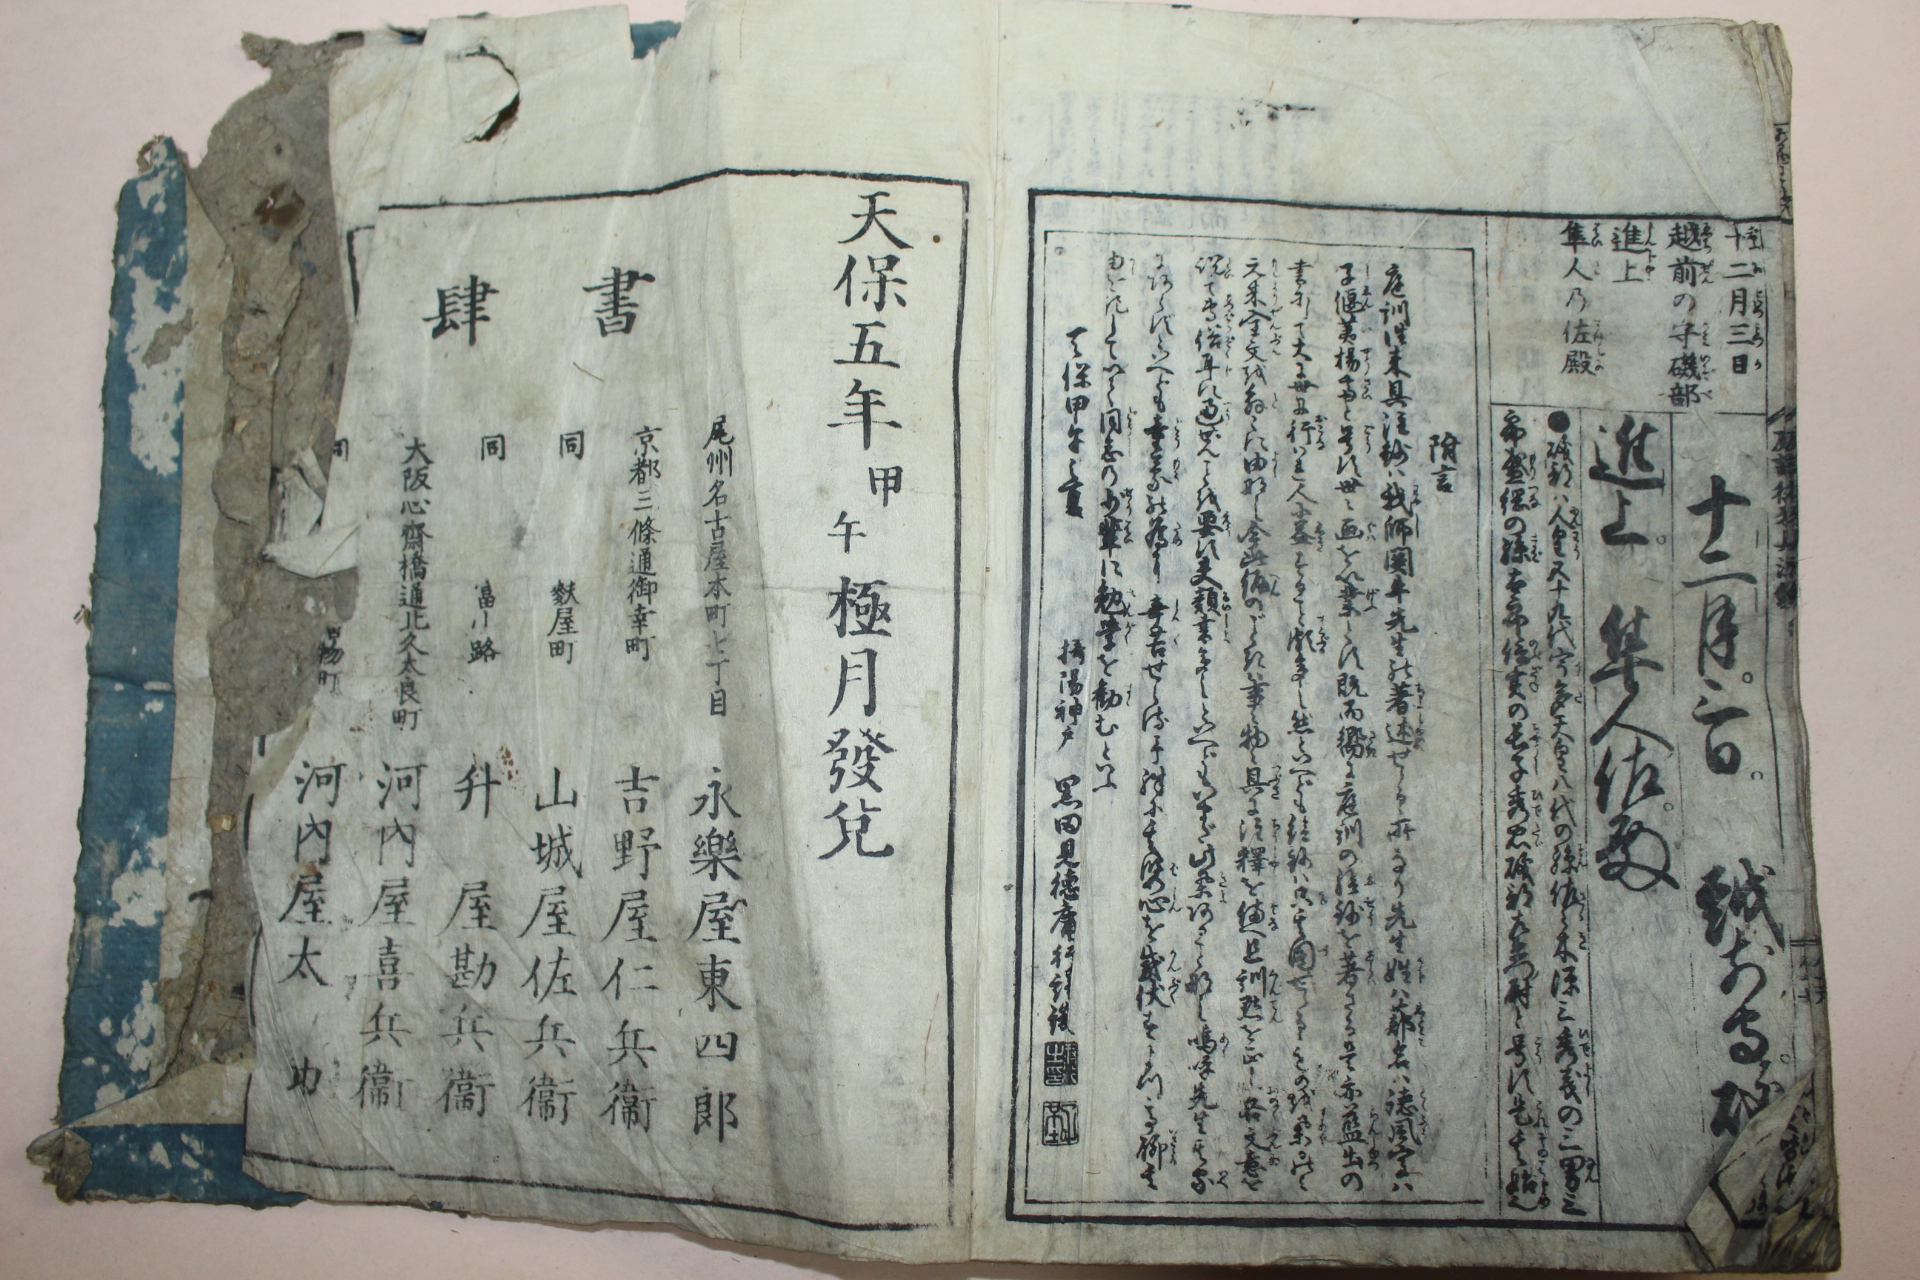 1834년(天保5年) 일본목판본 정훈왕래구주초(庭訓往來具注鈔) 1책완질